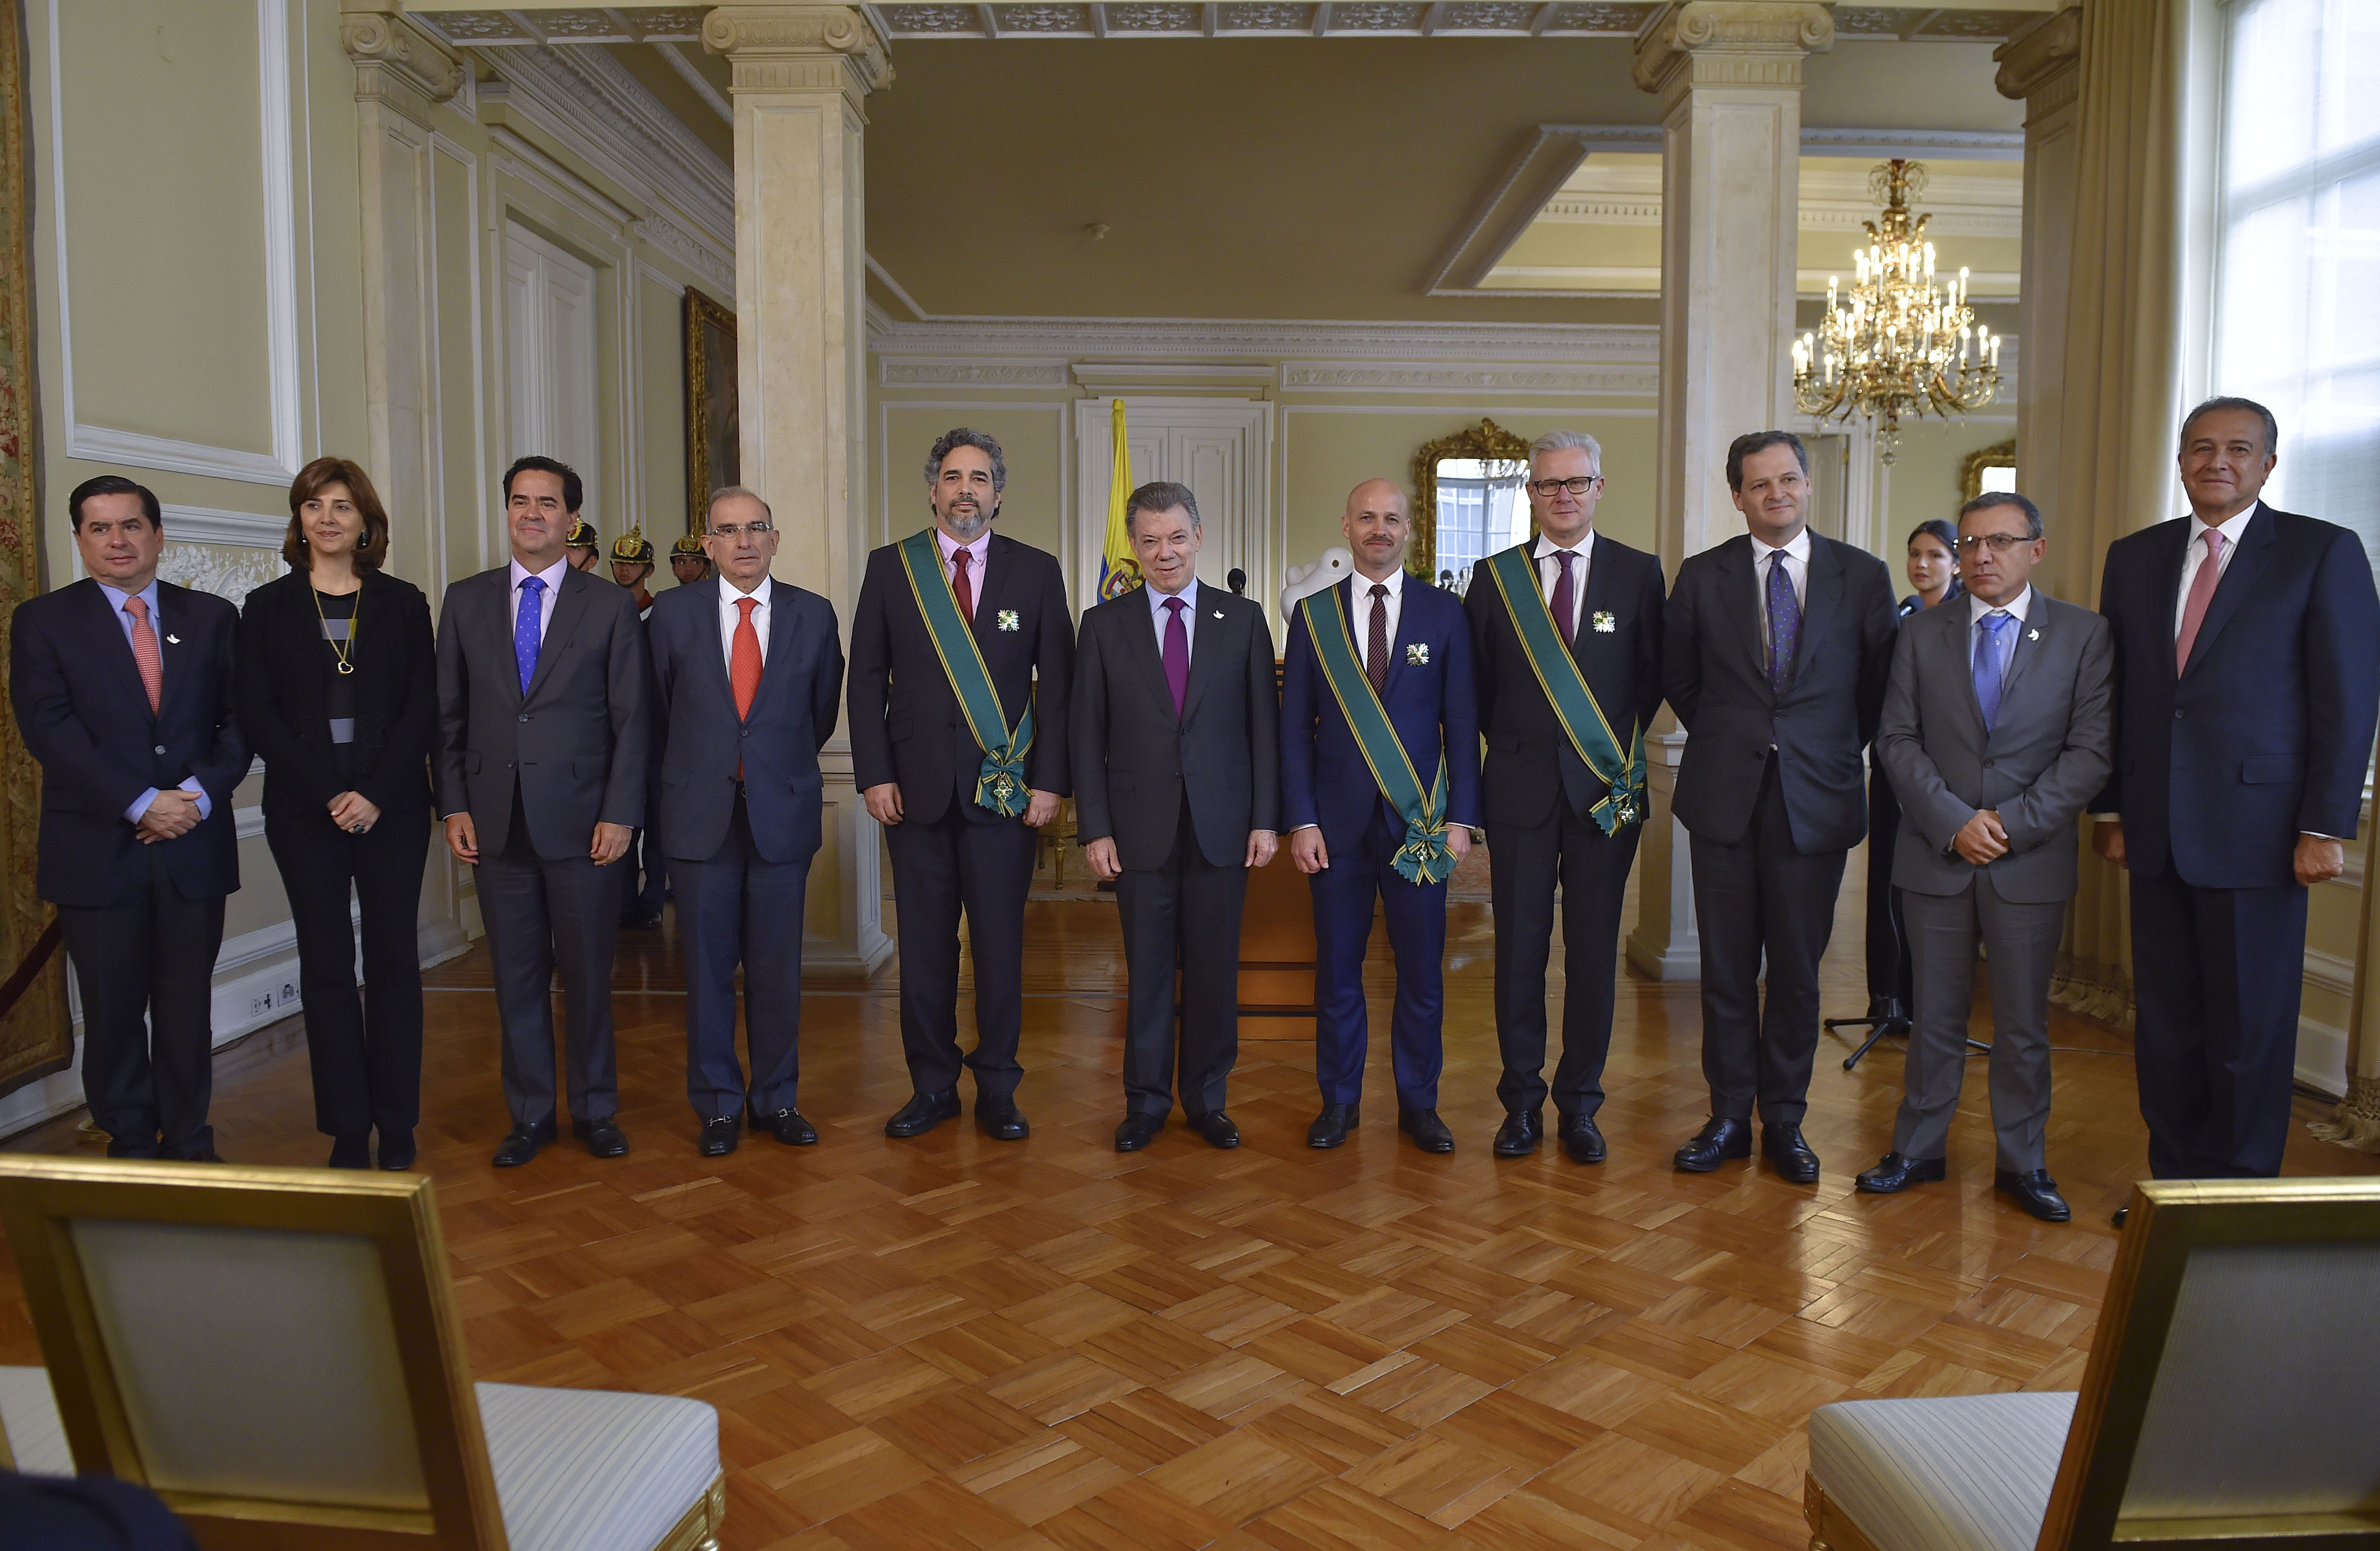 Canciller Holguín asistió a reconocimiento a Garantes del Proceso de Paz y a la delegación del CICR, por parte del Presidente Juan Manuel Santos